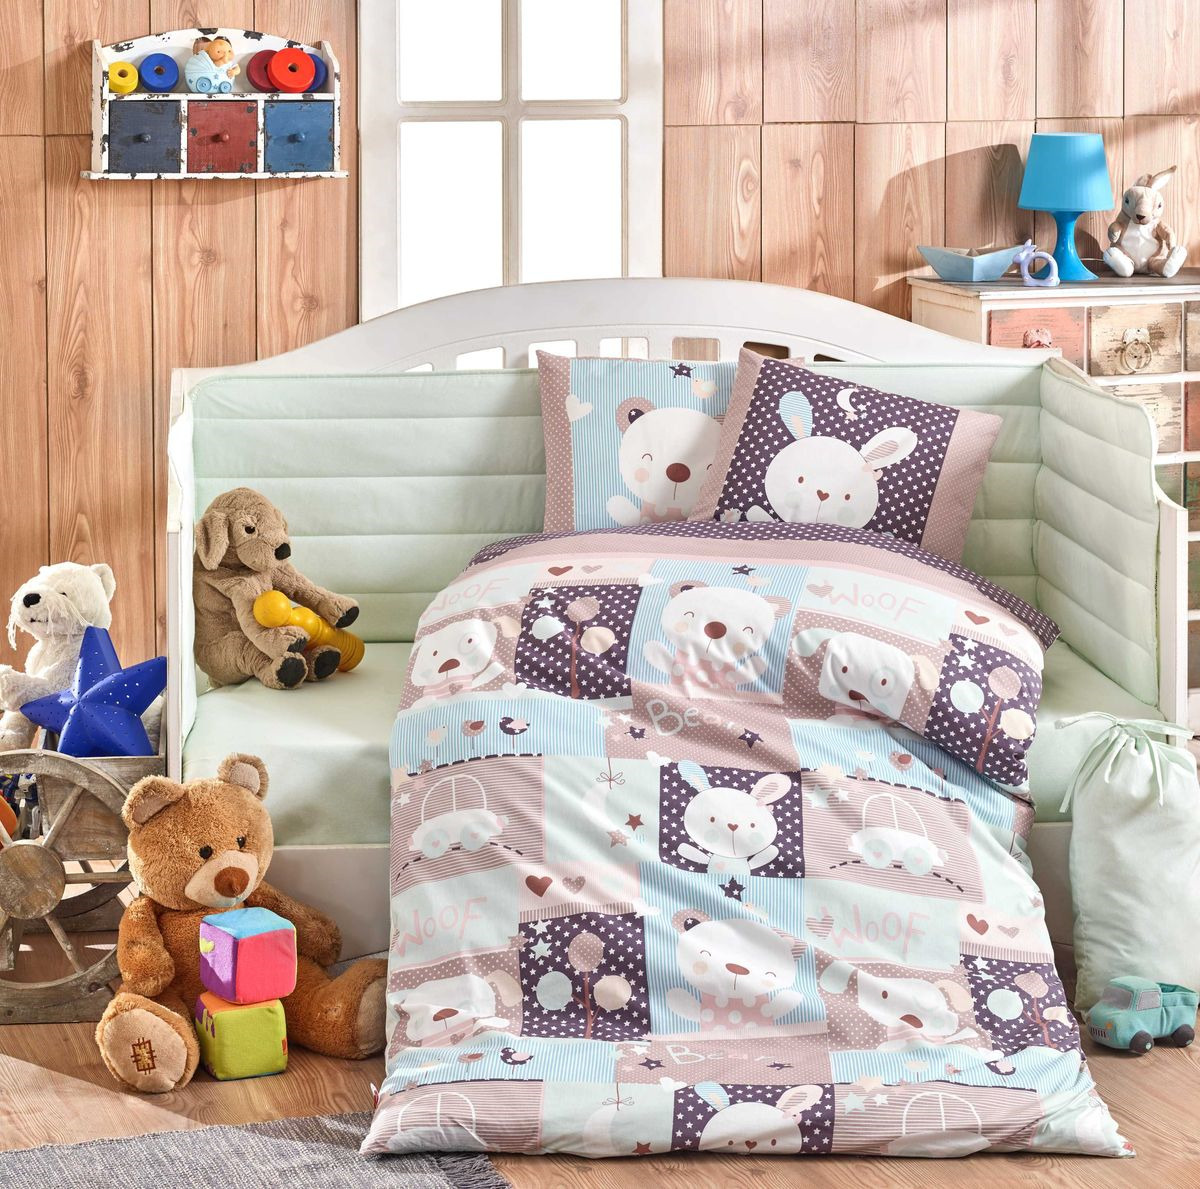 Комплект постельного белья Hobby Home Collection Snoopy, цвет: светло-зеленый. 1501002160